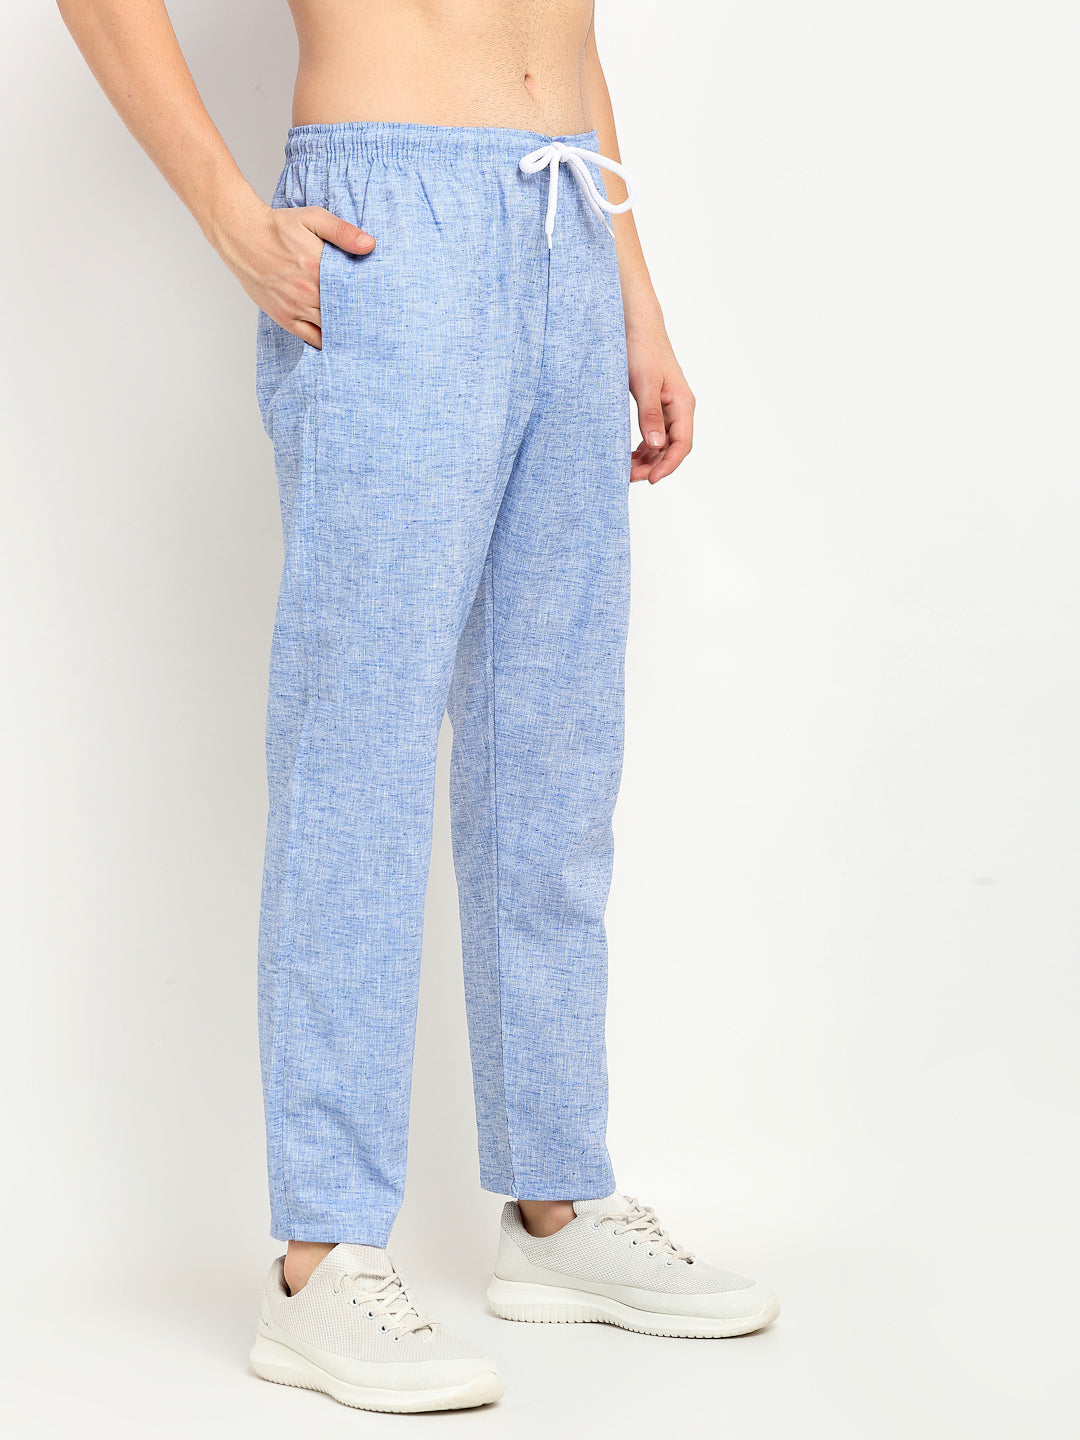 Jainish Men's Blue Linen Cotton Track Pants ( JOG 021Blue ) - Distacart